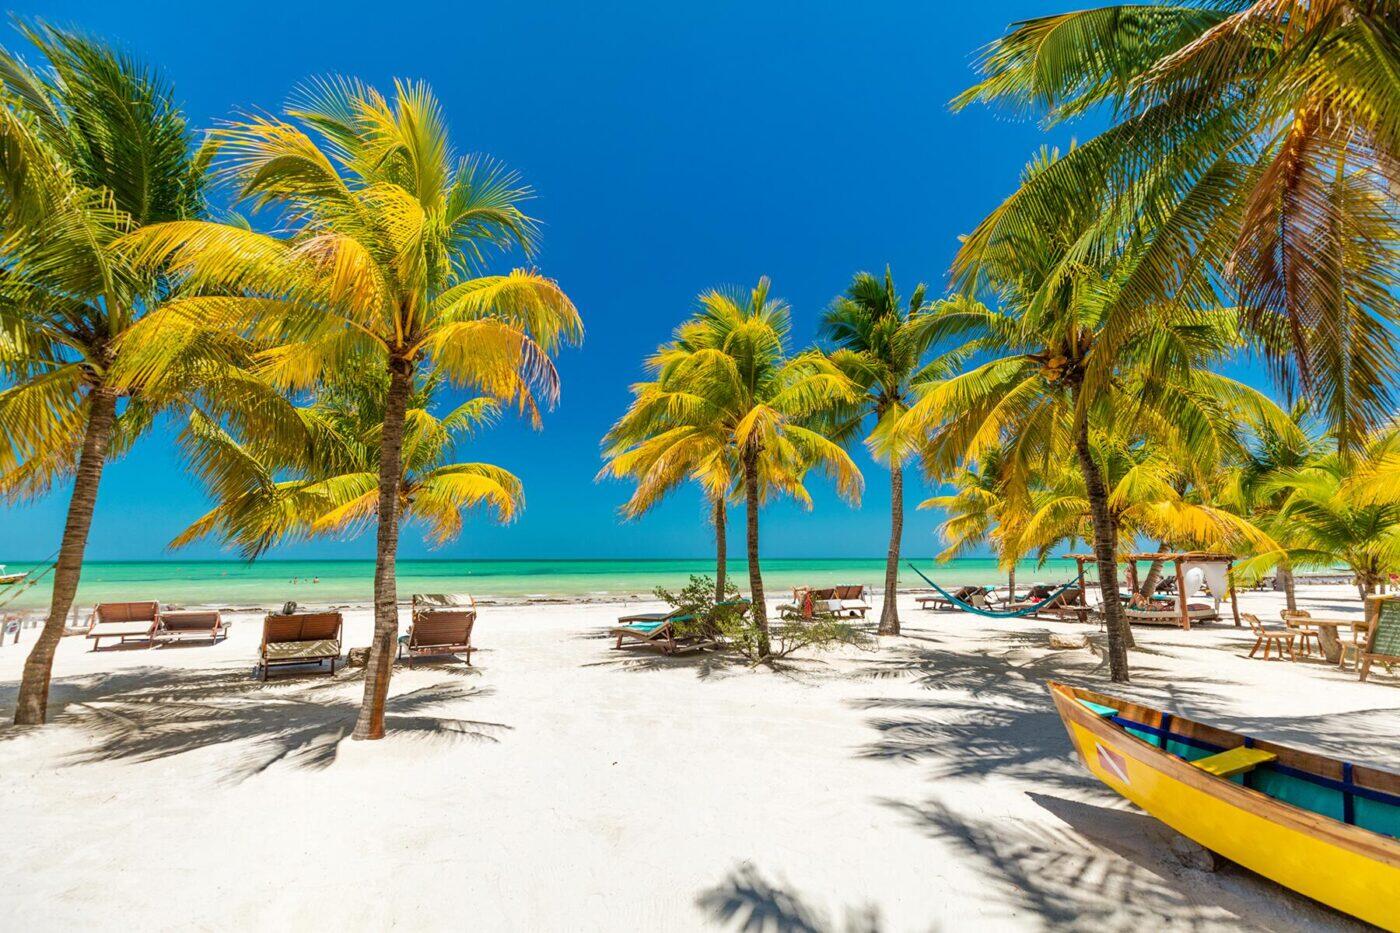 cancun sightseeing tour playa del carmen